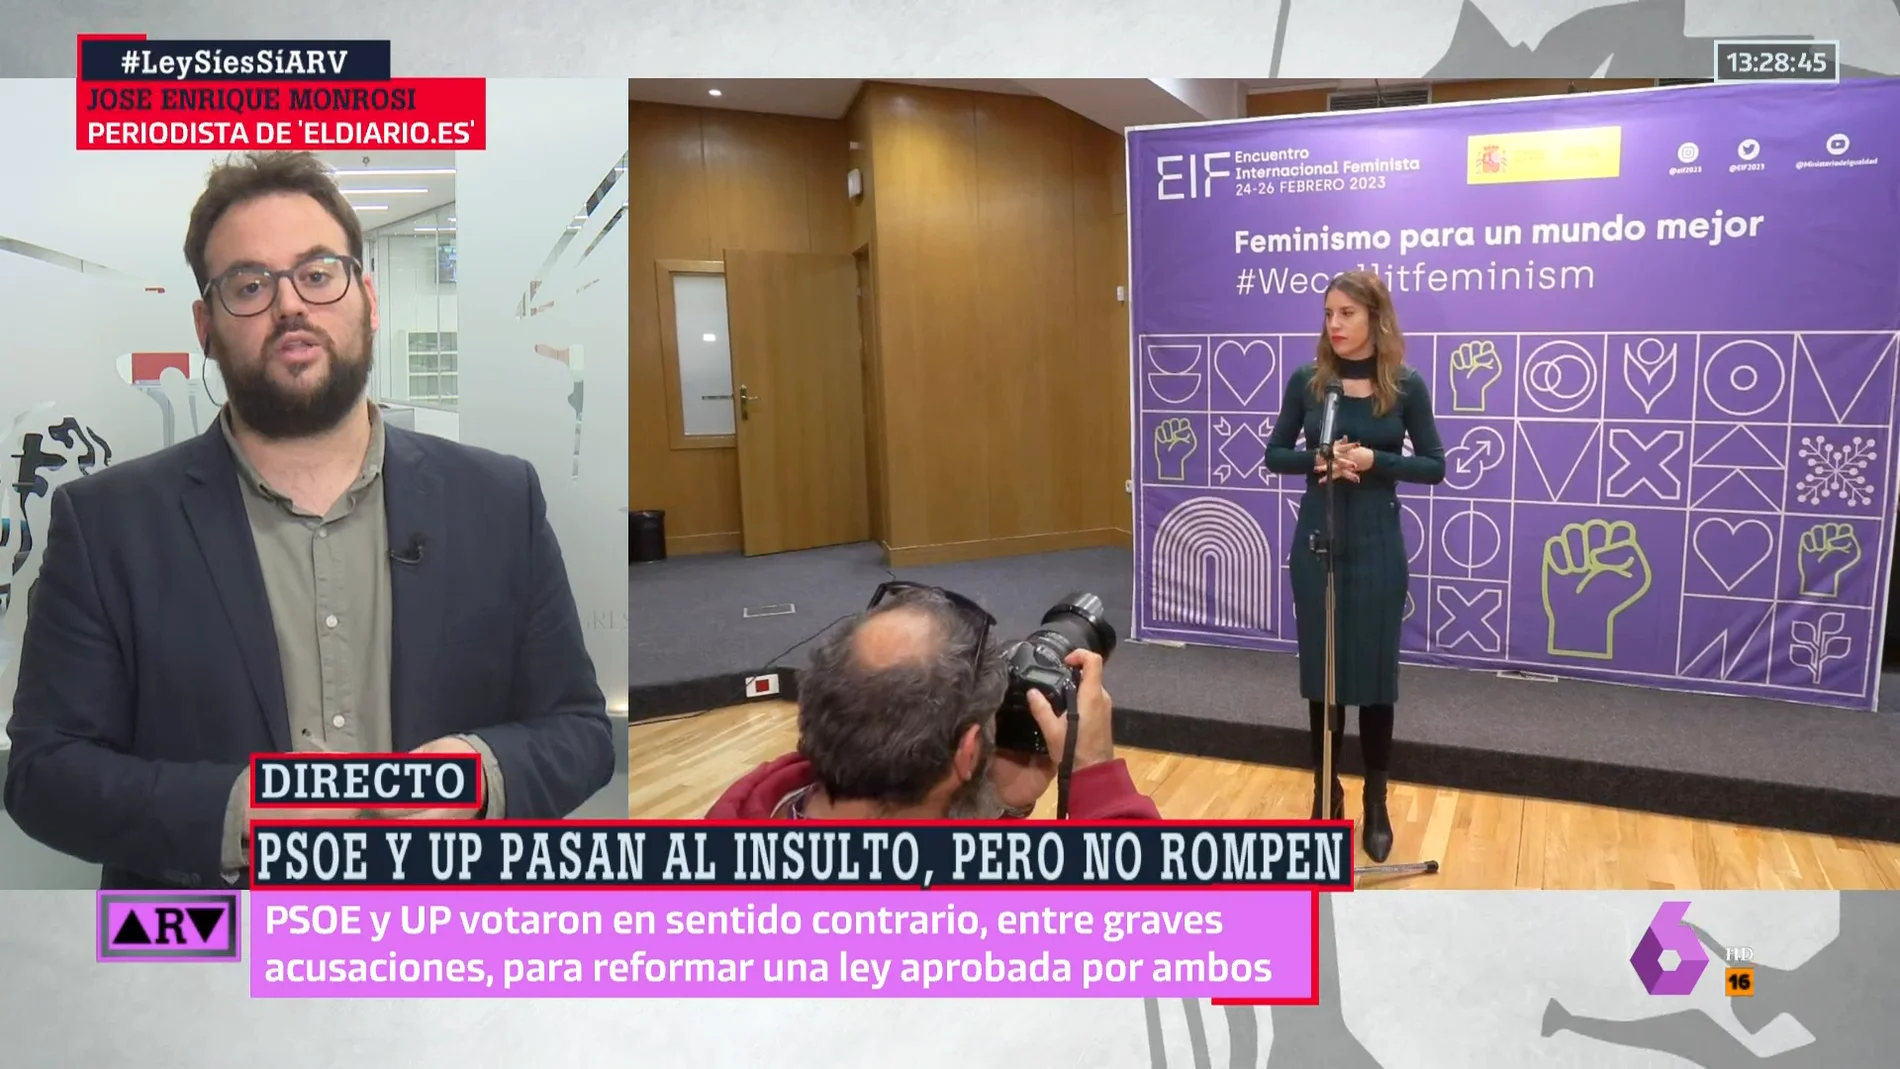 ¿Cómo deja a Yolanda Díaz la división entre PSOE y Podemos por el 'sólo sí es sí'? El análisis de José Enrique Monrosi